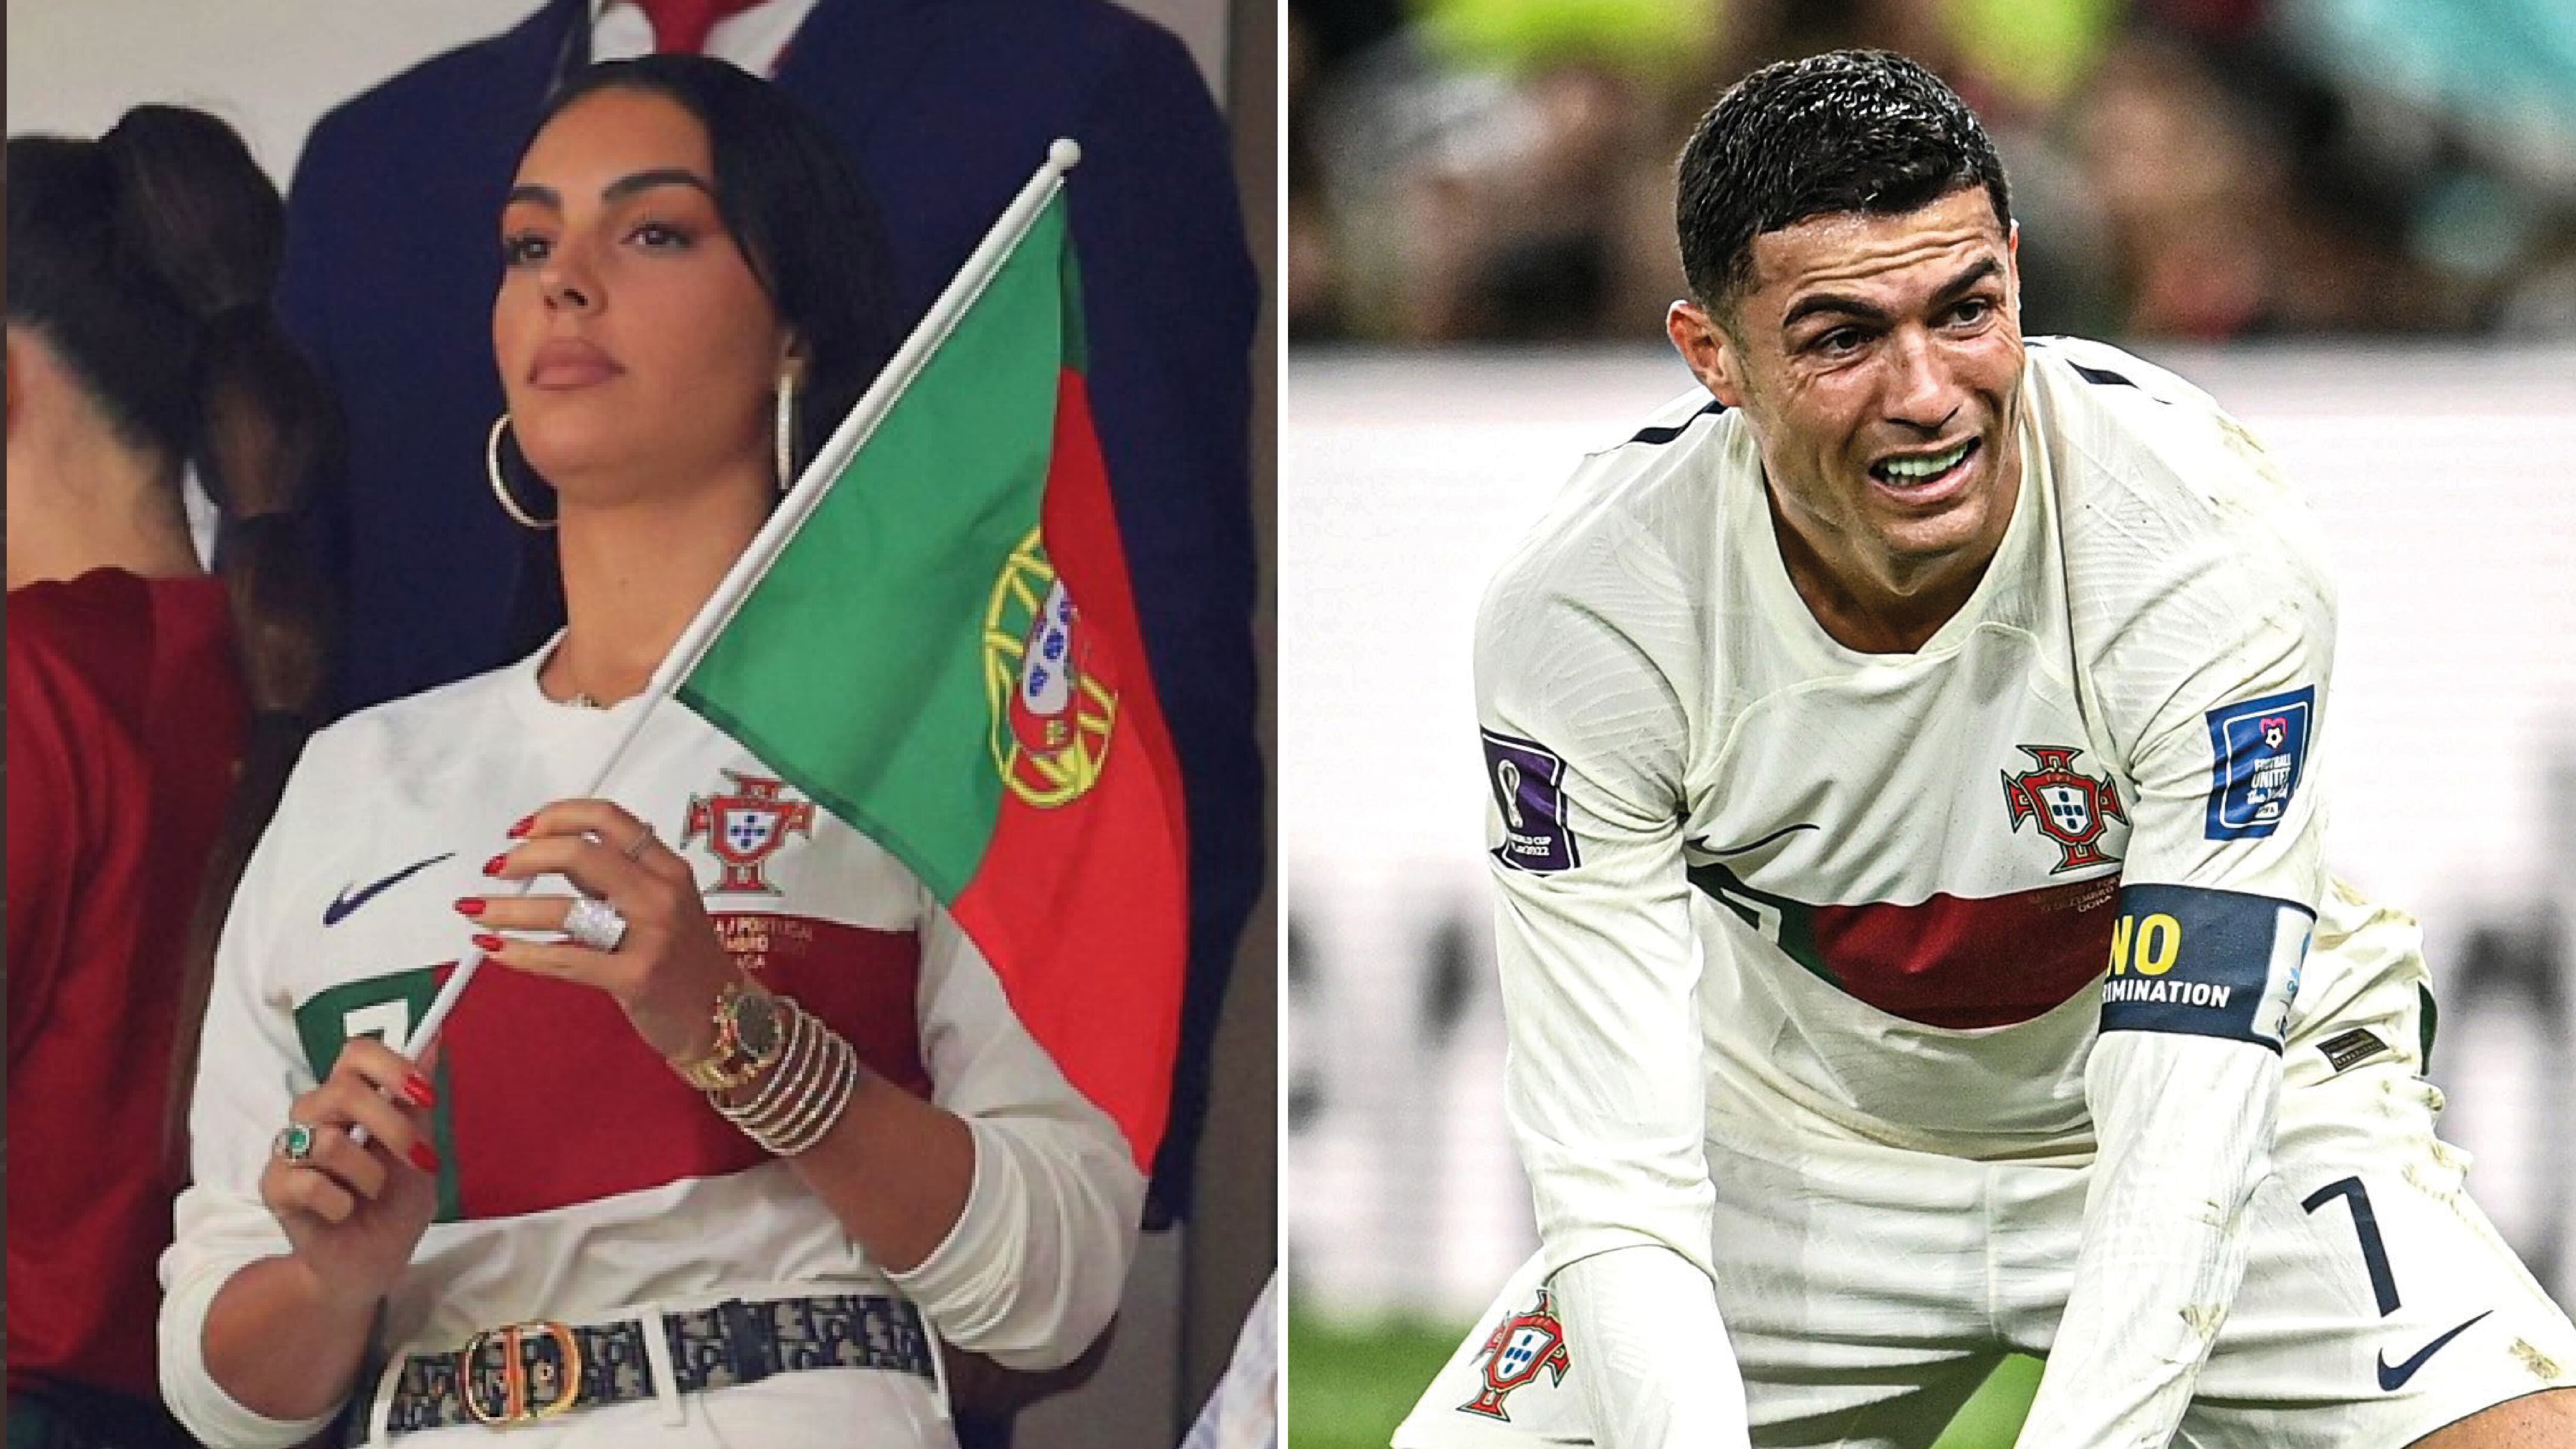 Esposa de Cristiano Ronaldo vuelve a estallar contra el DT de Portugal tras la eliminación: "No se puede sacar la cara por alguien que no lo merece"